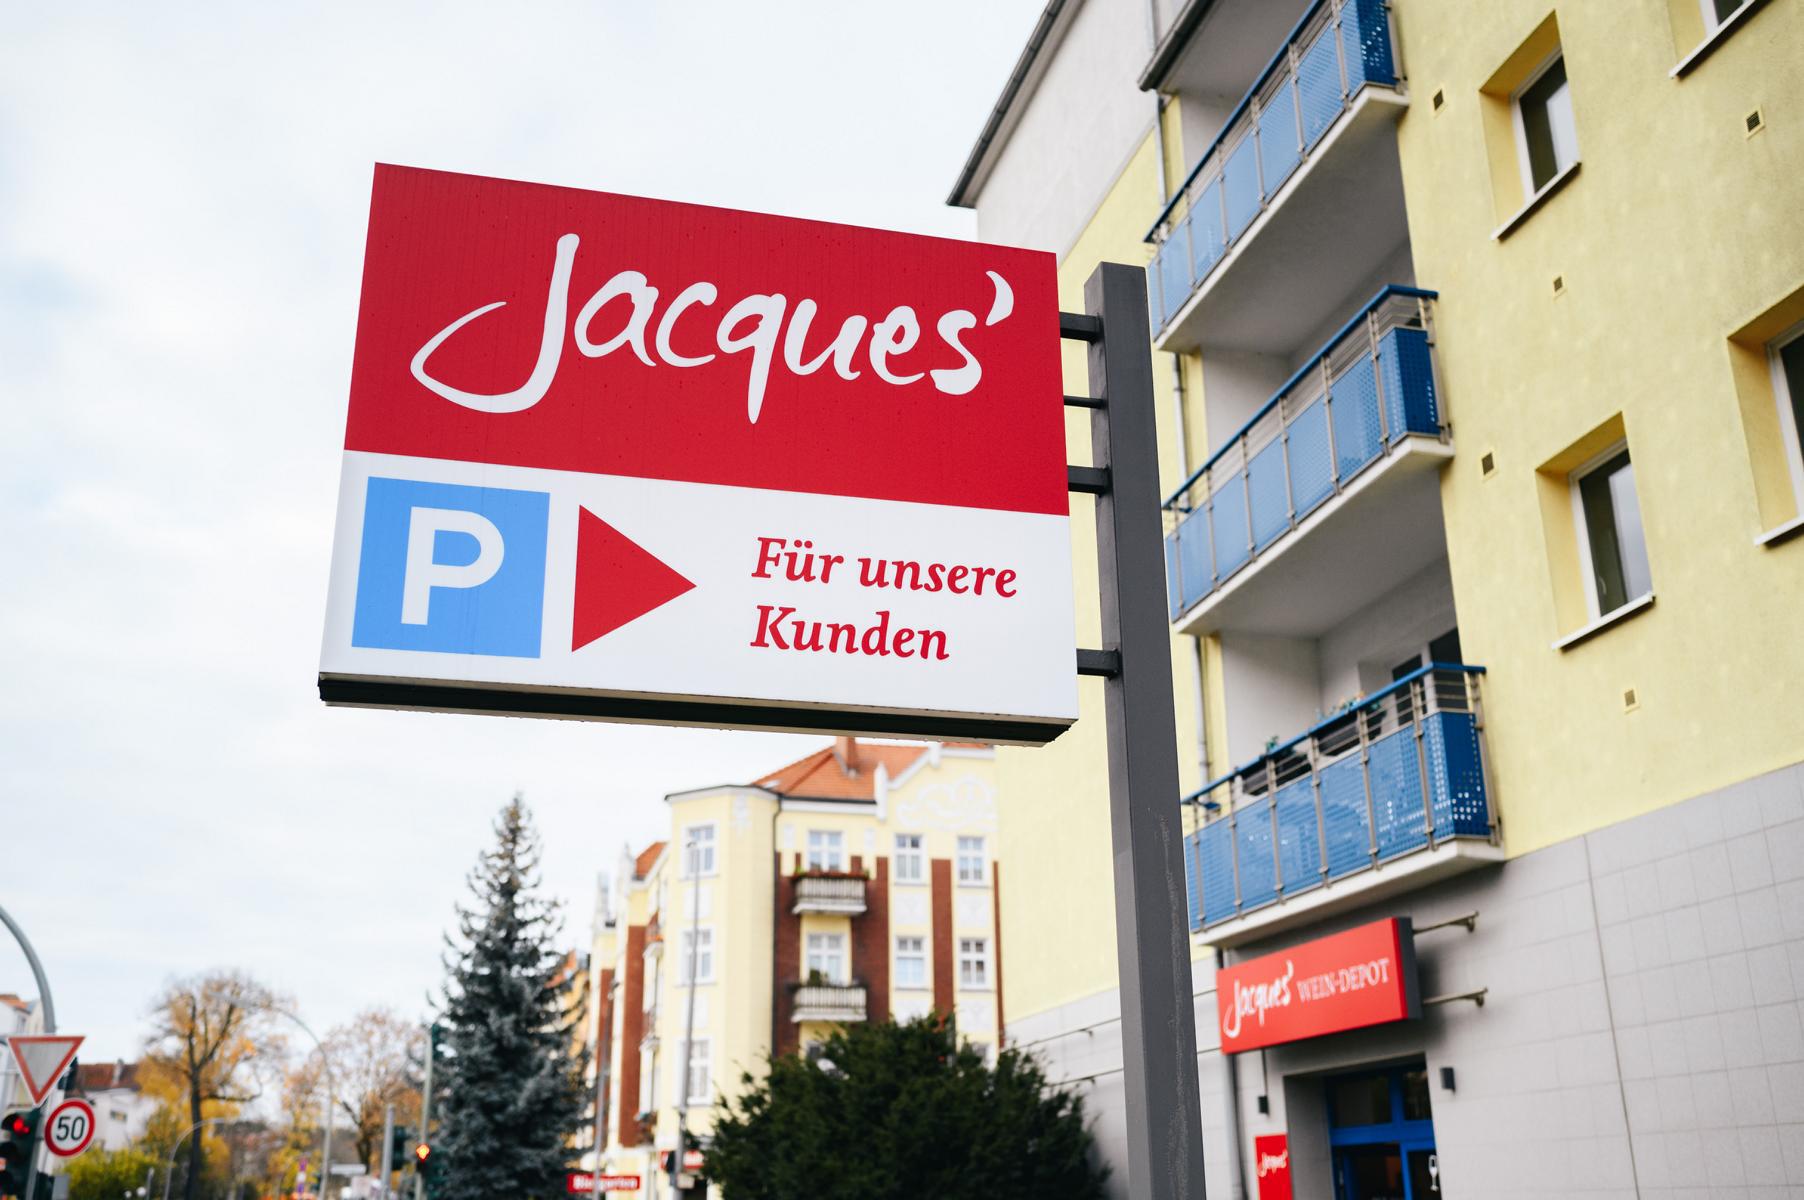 Bilder Jacques’ Wein-Depot Berlin-Lichterfelde